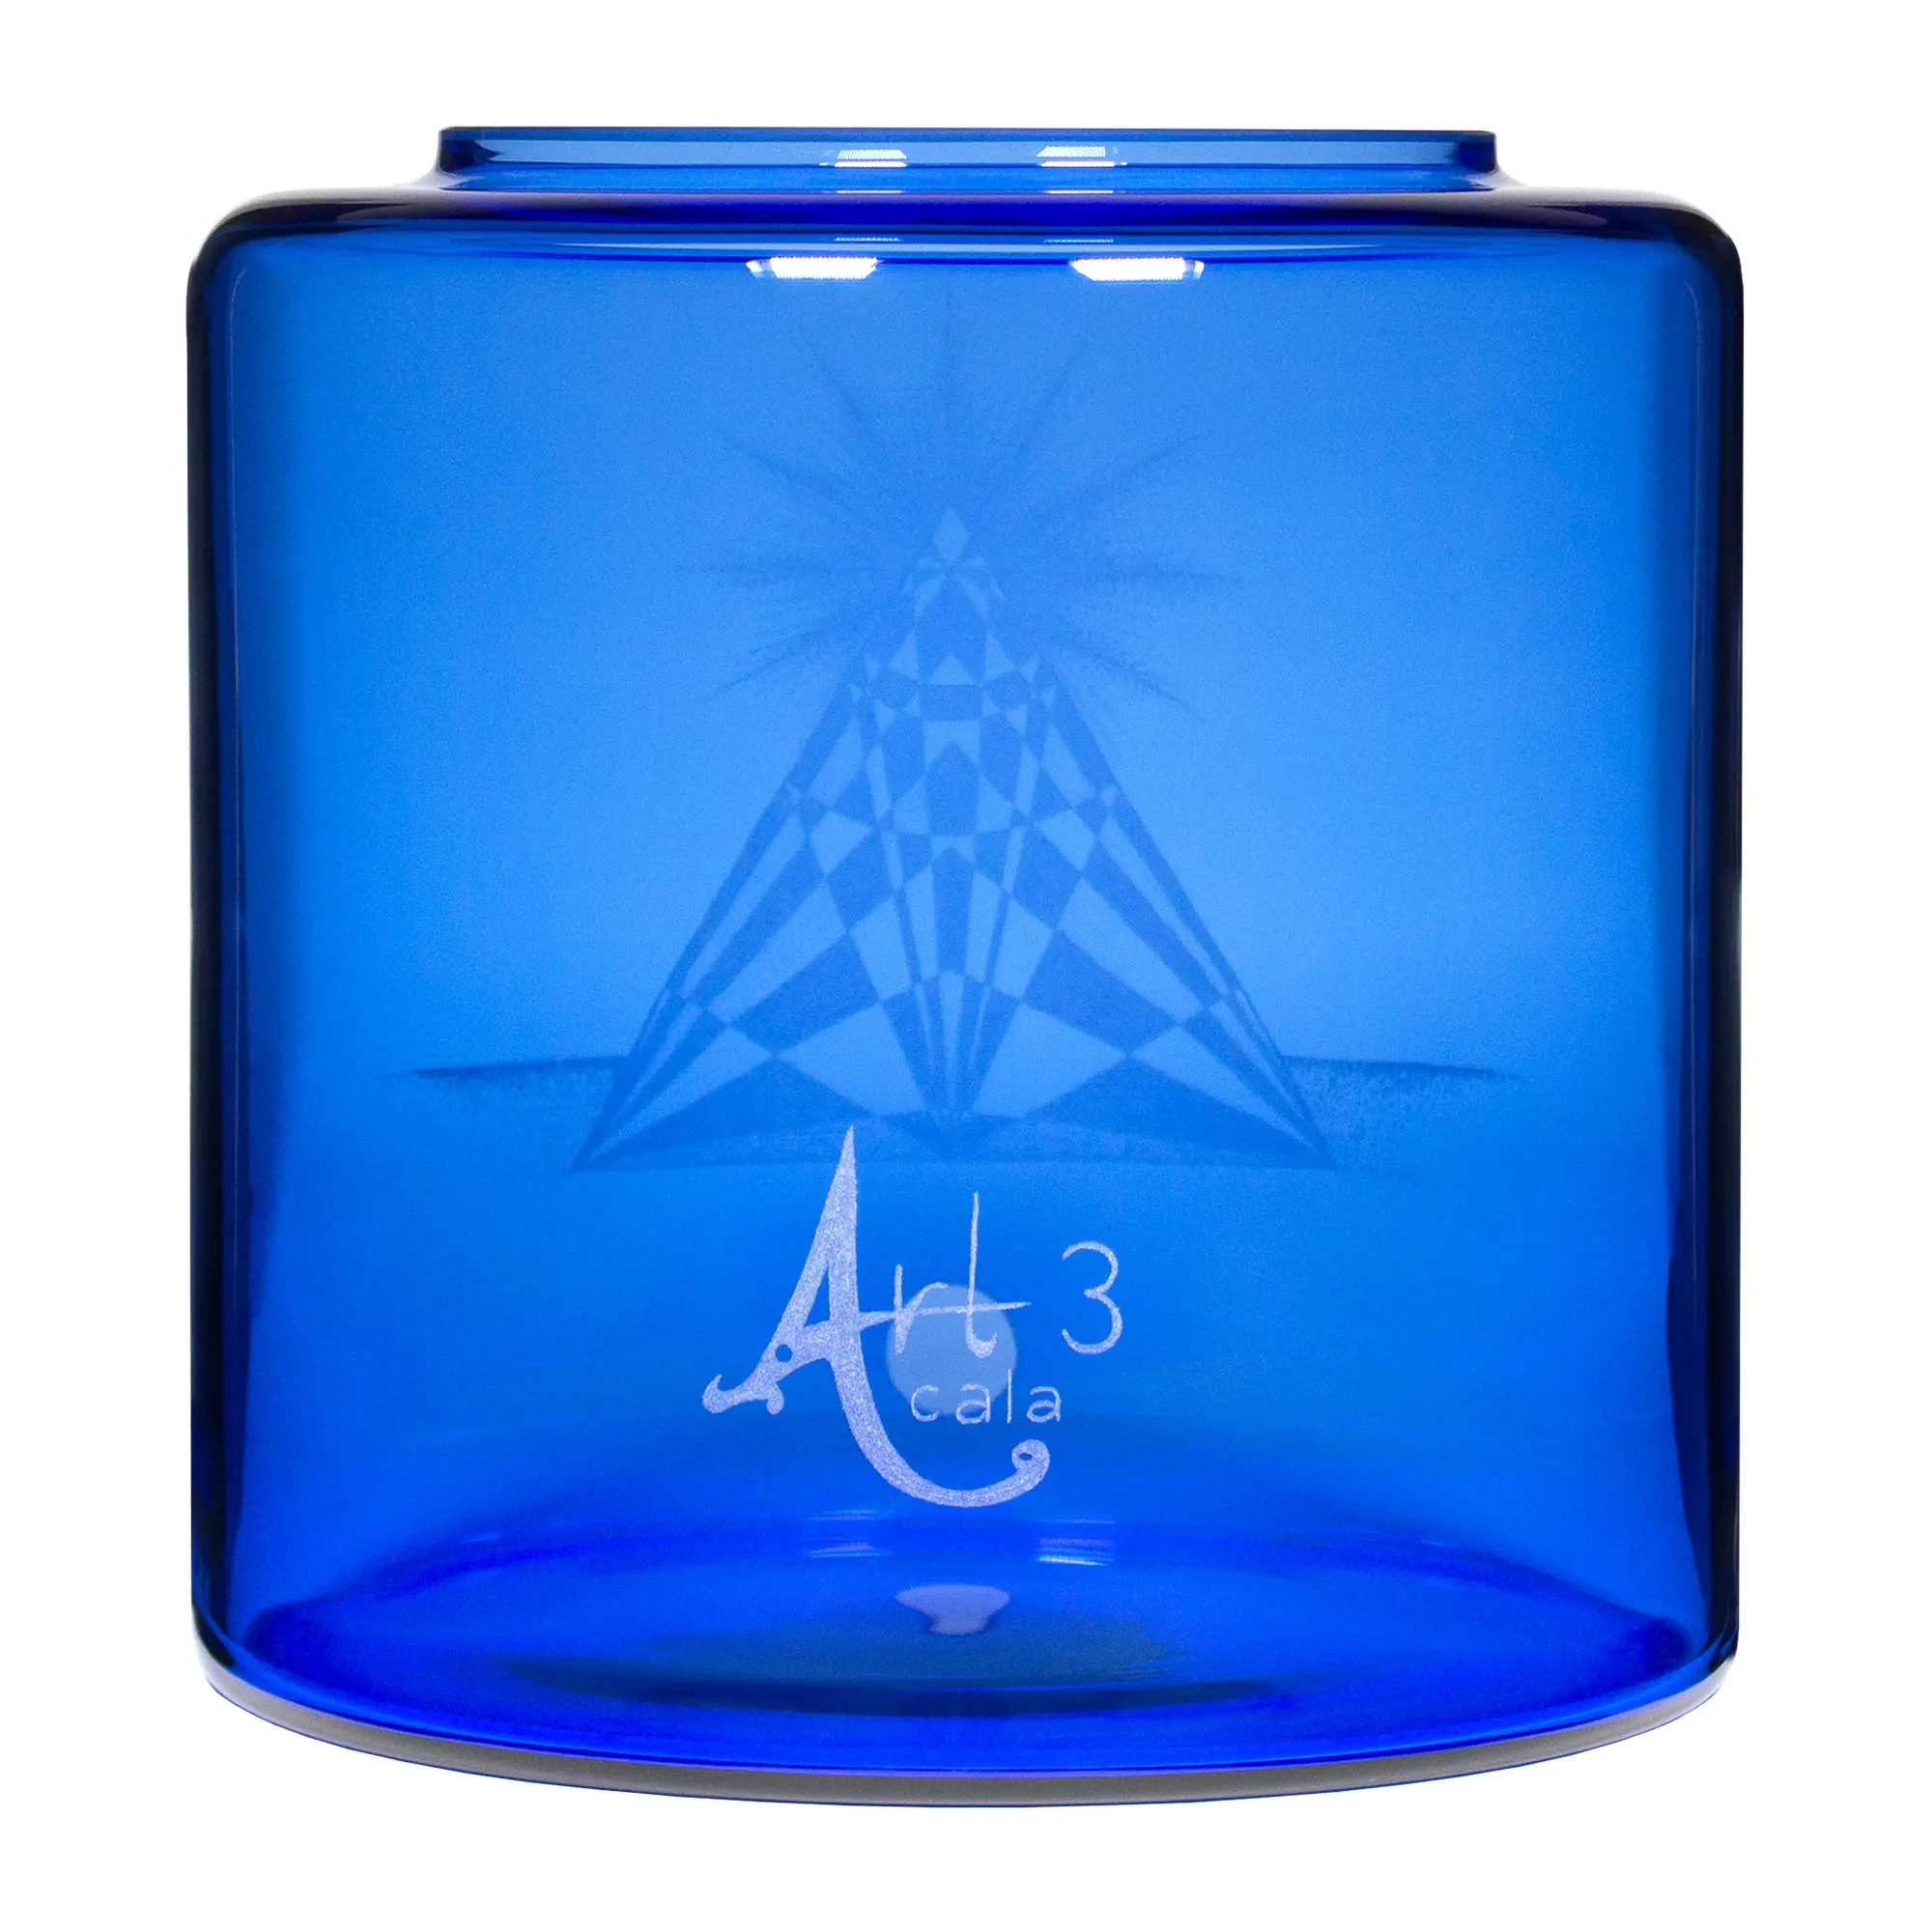 Vorratstank für einen Acala Wasserfilter Mini mit einer Handgravur. Die Gravur zeigt, auf blauem Glas, ein Dreieck mit Muster und einer Sonnendarstellung an der Spitze.Ansicht von hinten.